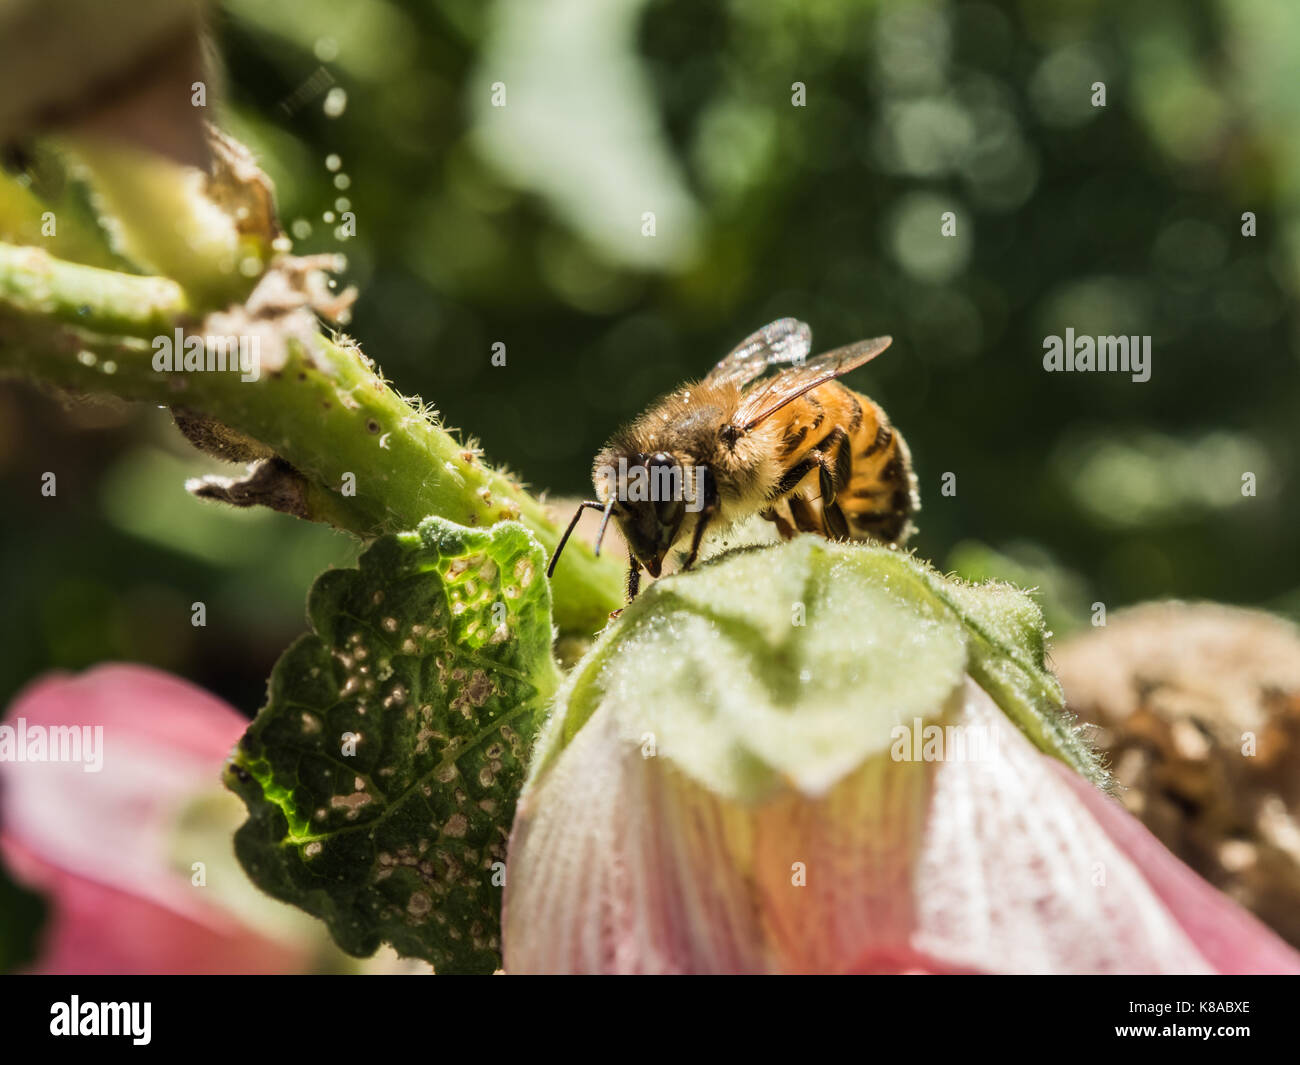 Die bestäubung. Niedlich Bild der westlichen Honigbiene. Biene bestäuben rosa Blume. Makro anzeigen. Close-up. Grüner Hintergrund. Stockfoto